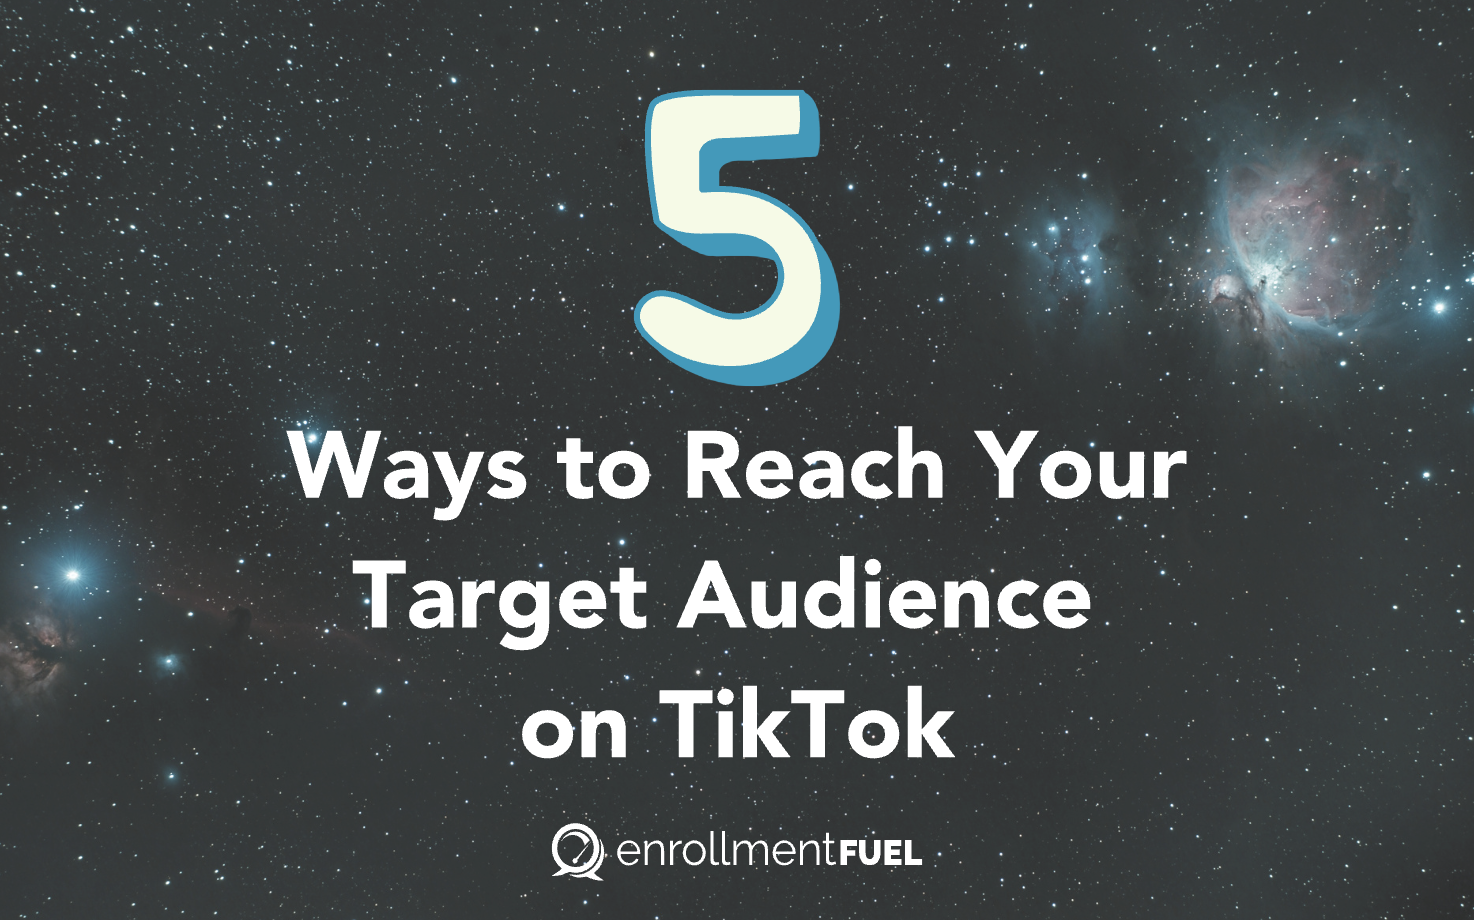 5 Ways to Reach Your Target Audience on TikTok